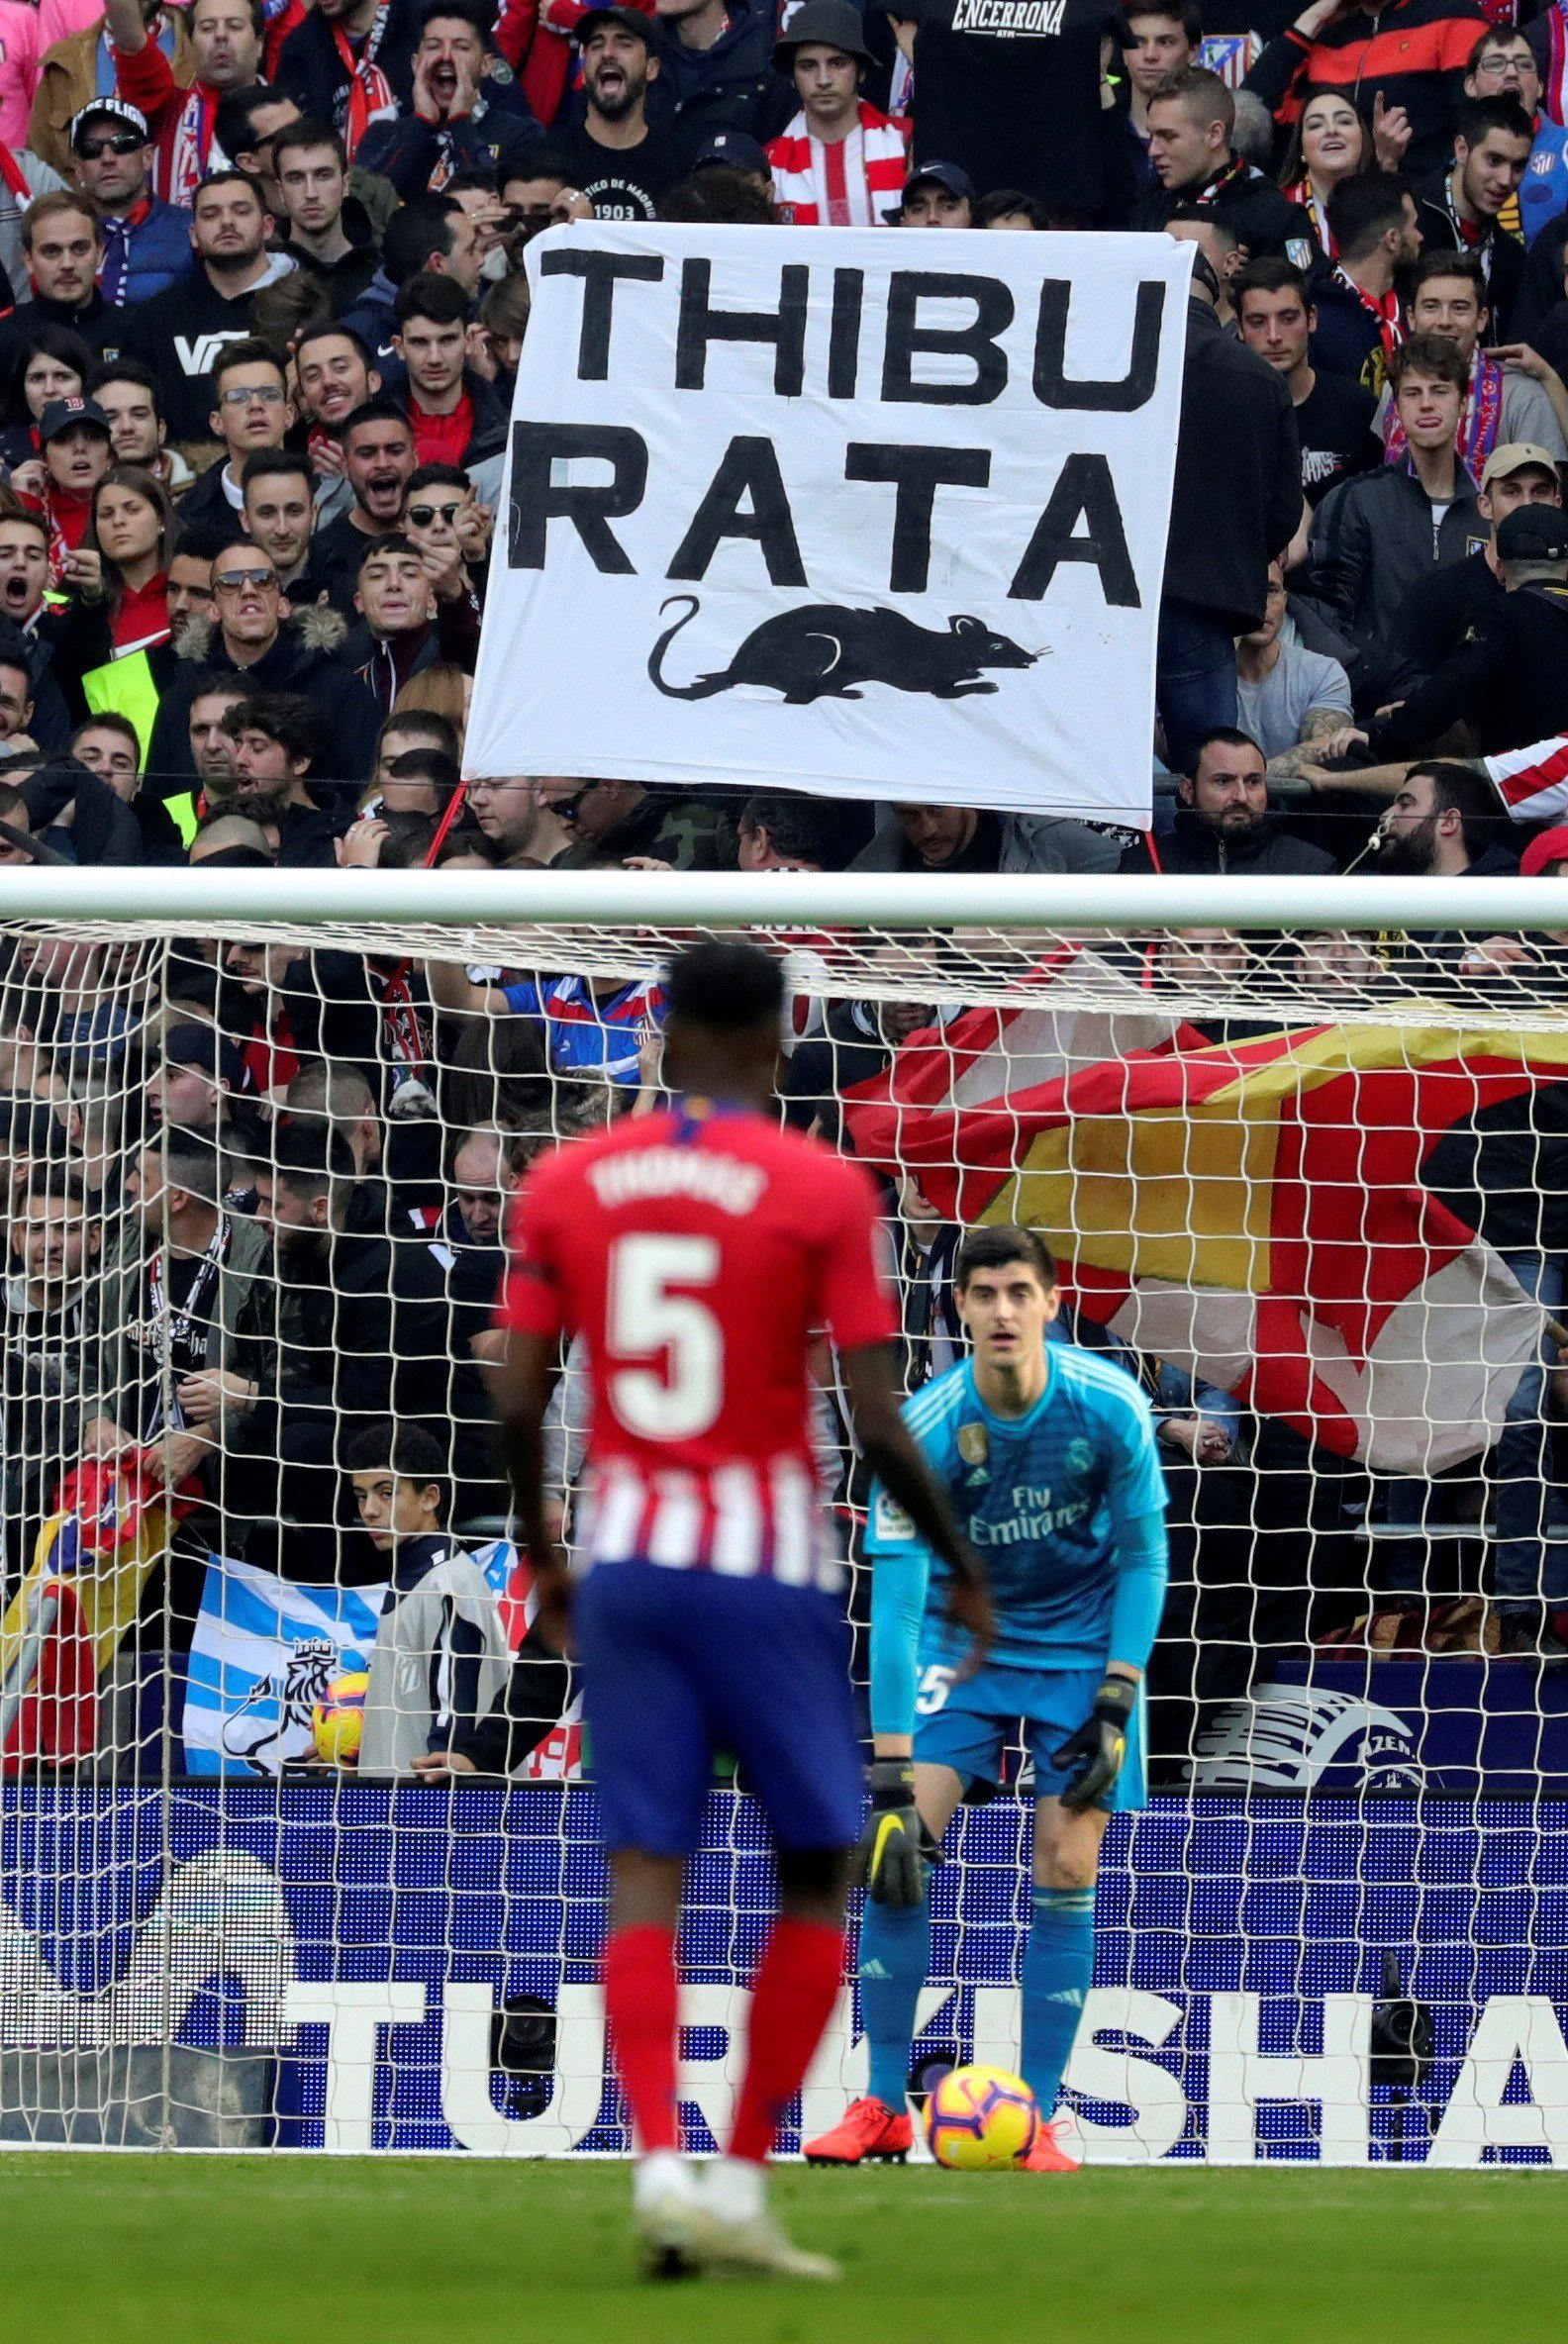 Los seguidores del Atlético lanzan ratas al portero del Madrid